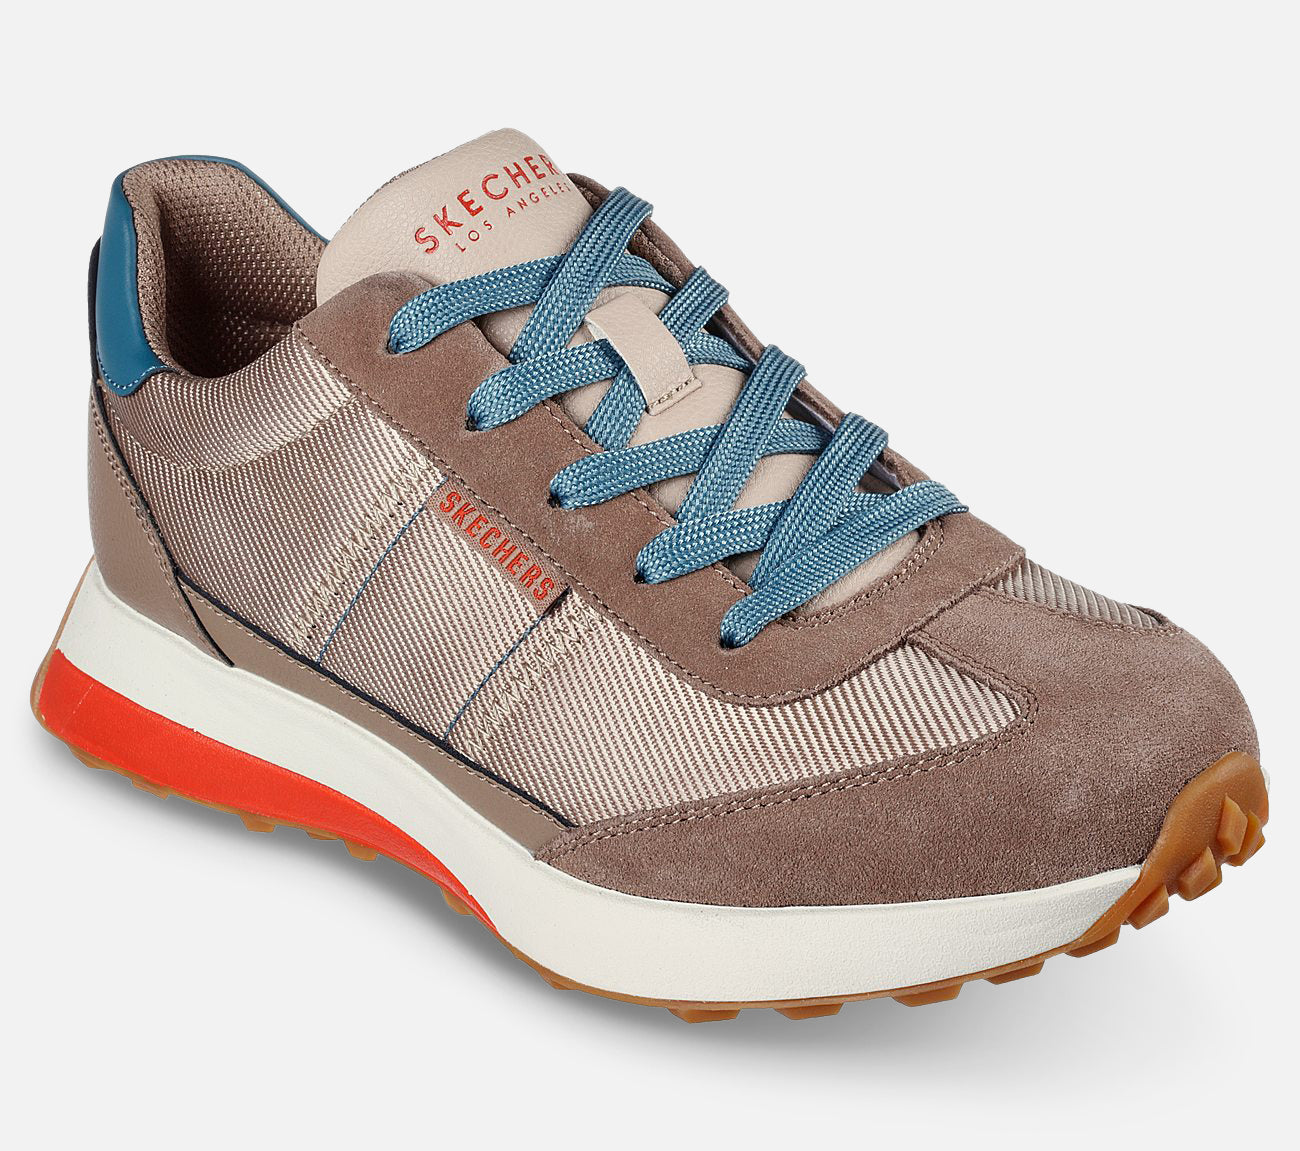 Gusto – Retro Wind Shoe Skechers